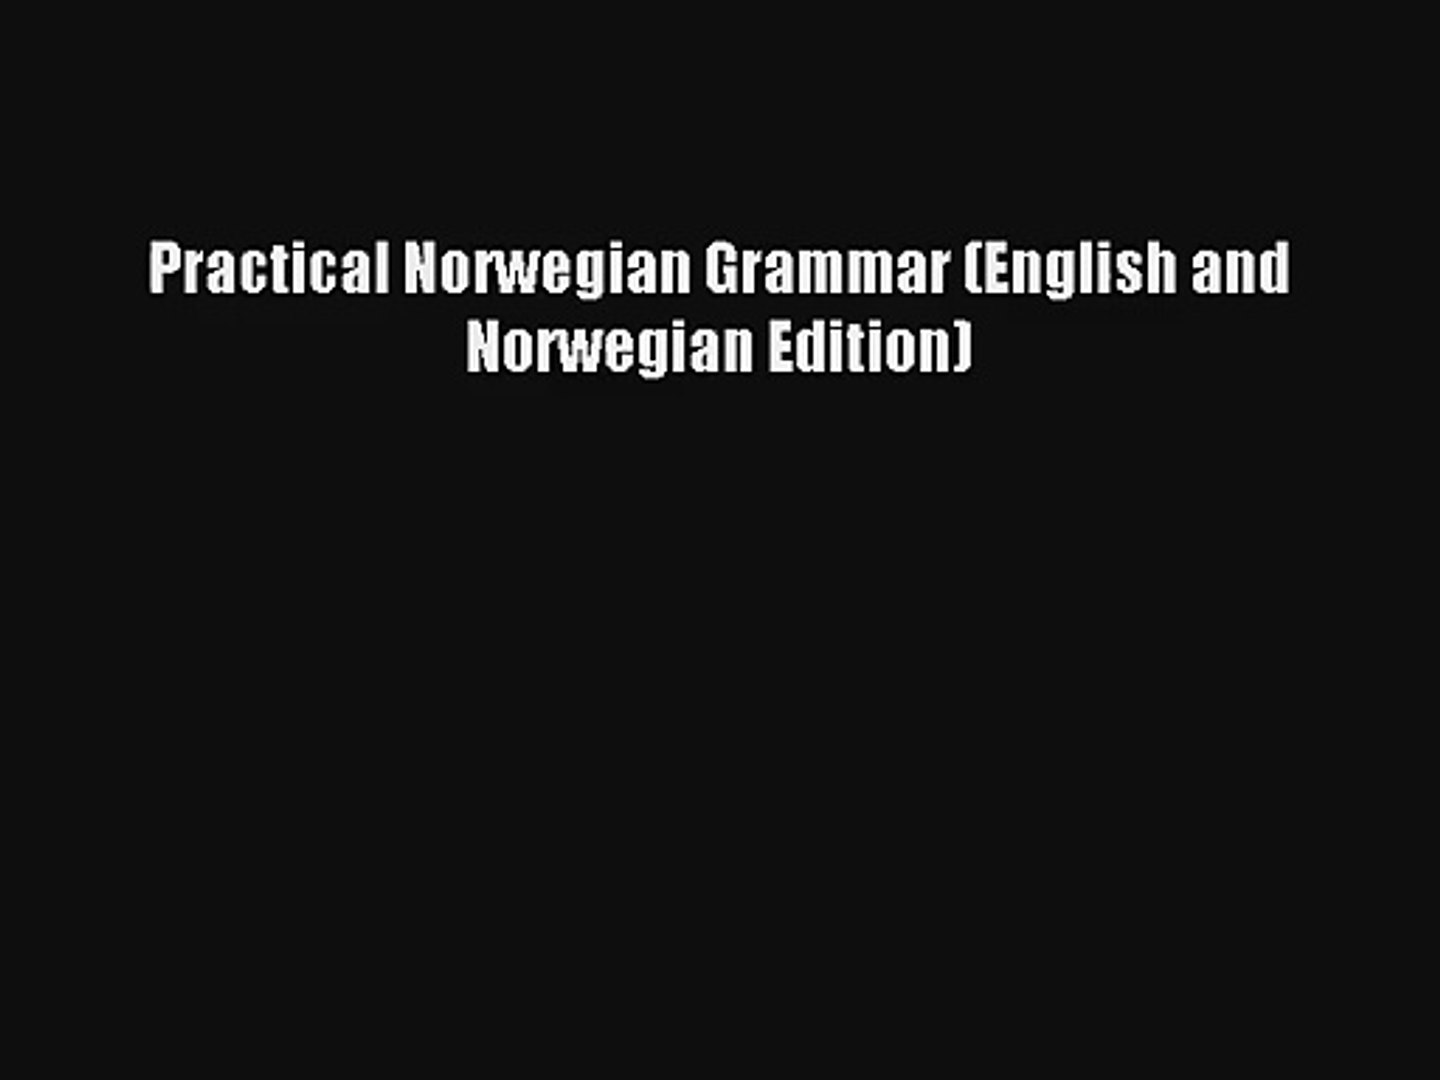 [Read] Practical Norwegian Grammar (English and Norwegian Edition) Online